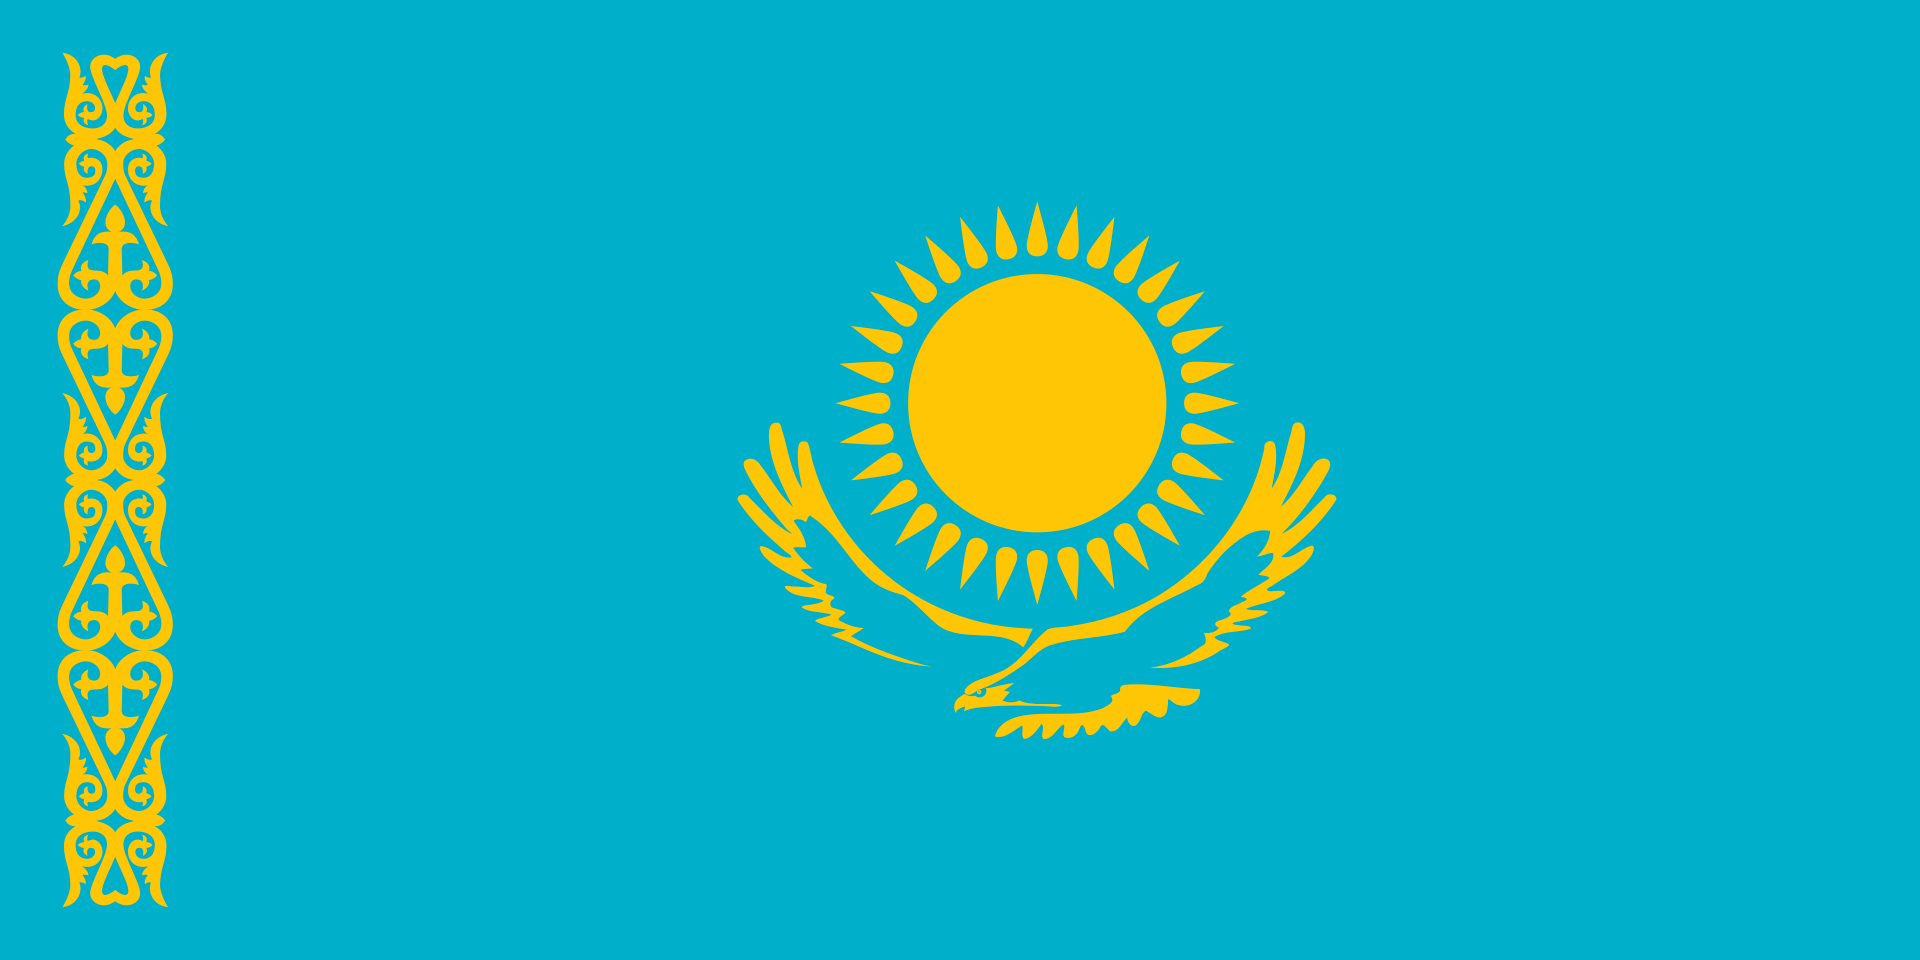 哈萨克斯坦U16